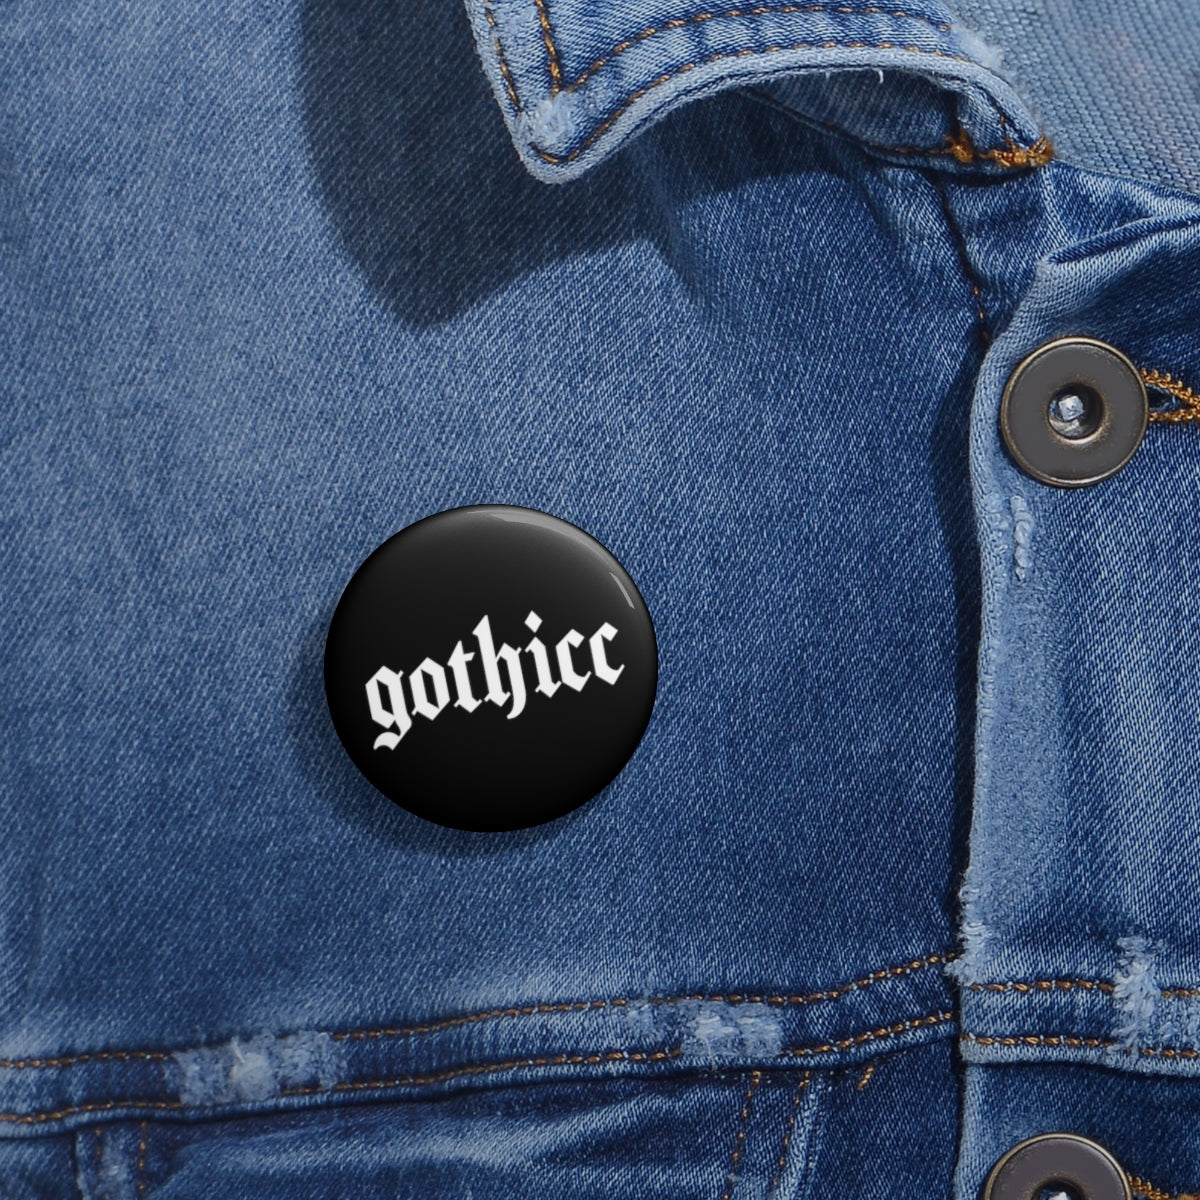 Dark Goth Gothicc Pin Button